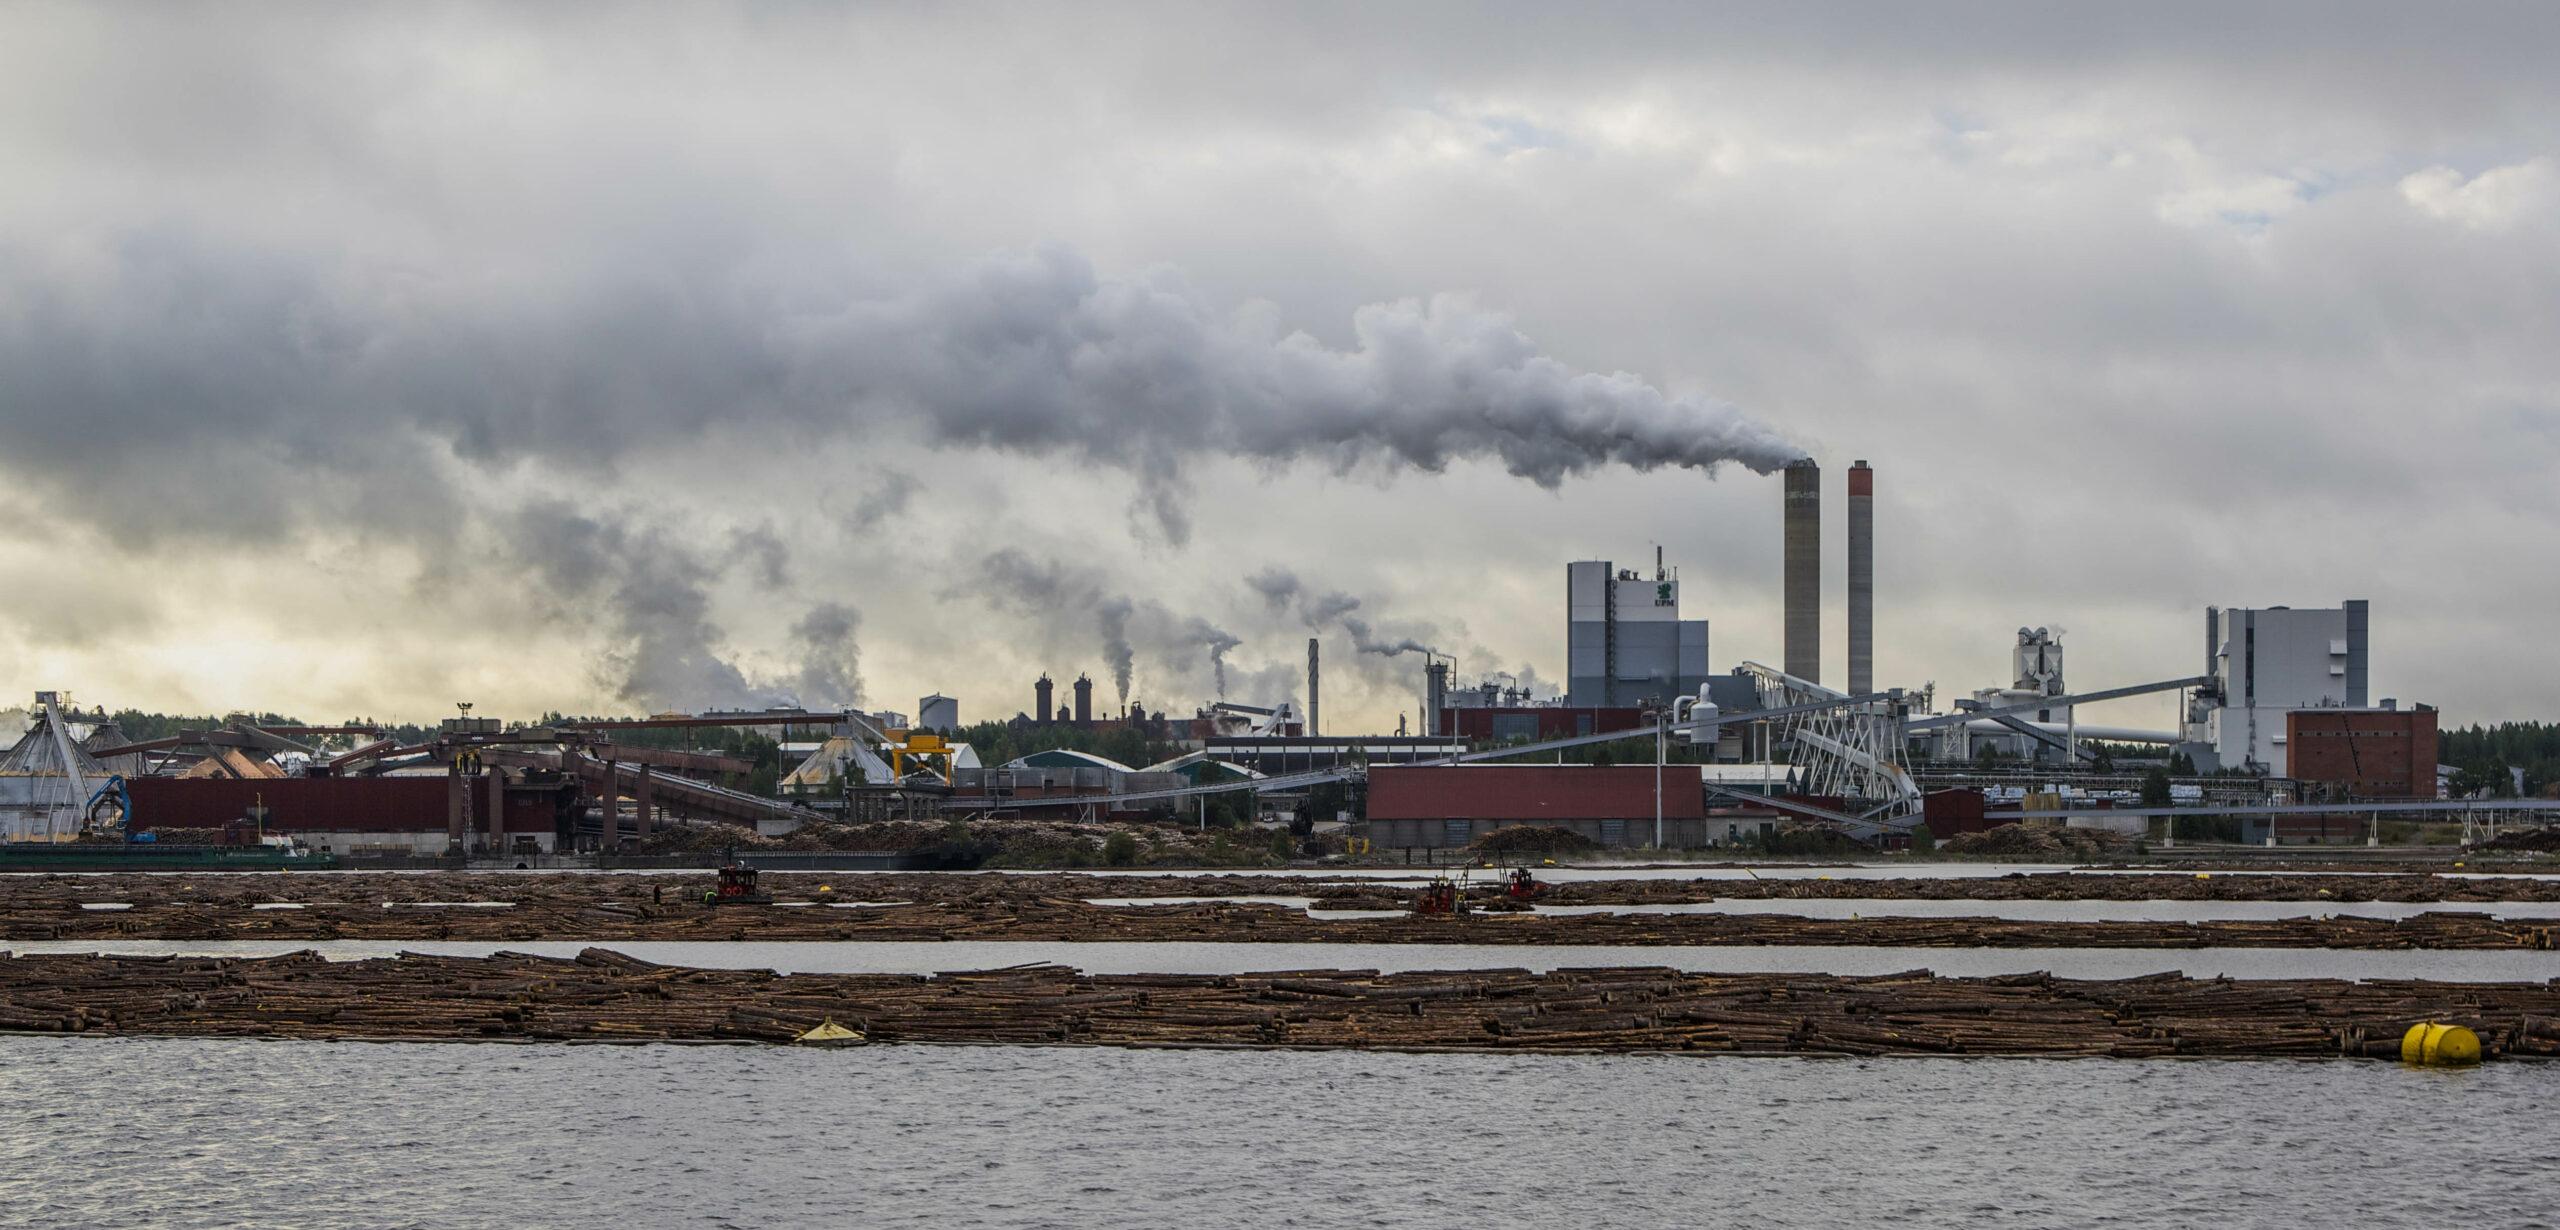 Skogsindustrins beslut att avveckla klorgasblekning av papper har bidragit till sänkta dioxinhalter i naturen. Foto: UPM:s pappersfabrik i Villmanstrand / Wikimedia commons / Ninora